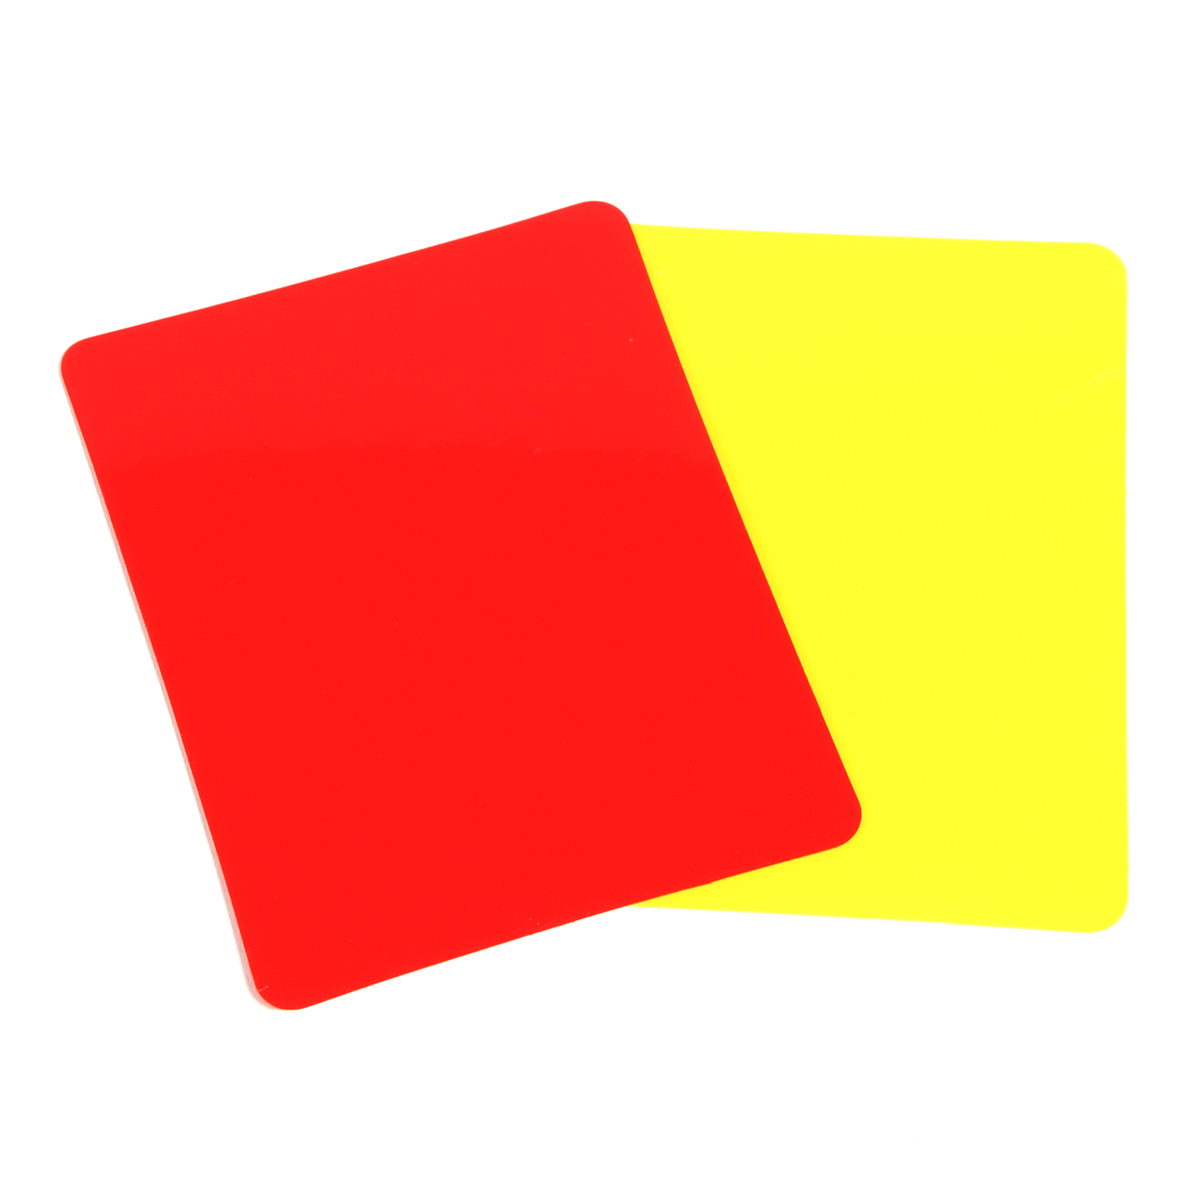 Tarjetas De Árbitro De Pvc (juego De 2, 1 Roja Y 1 Amarilla